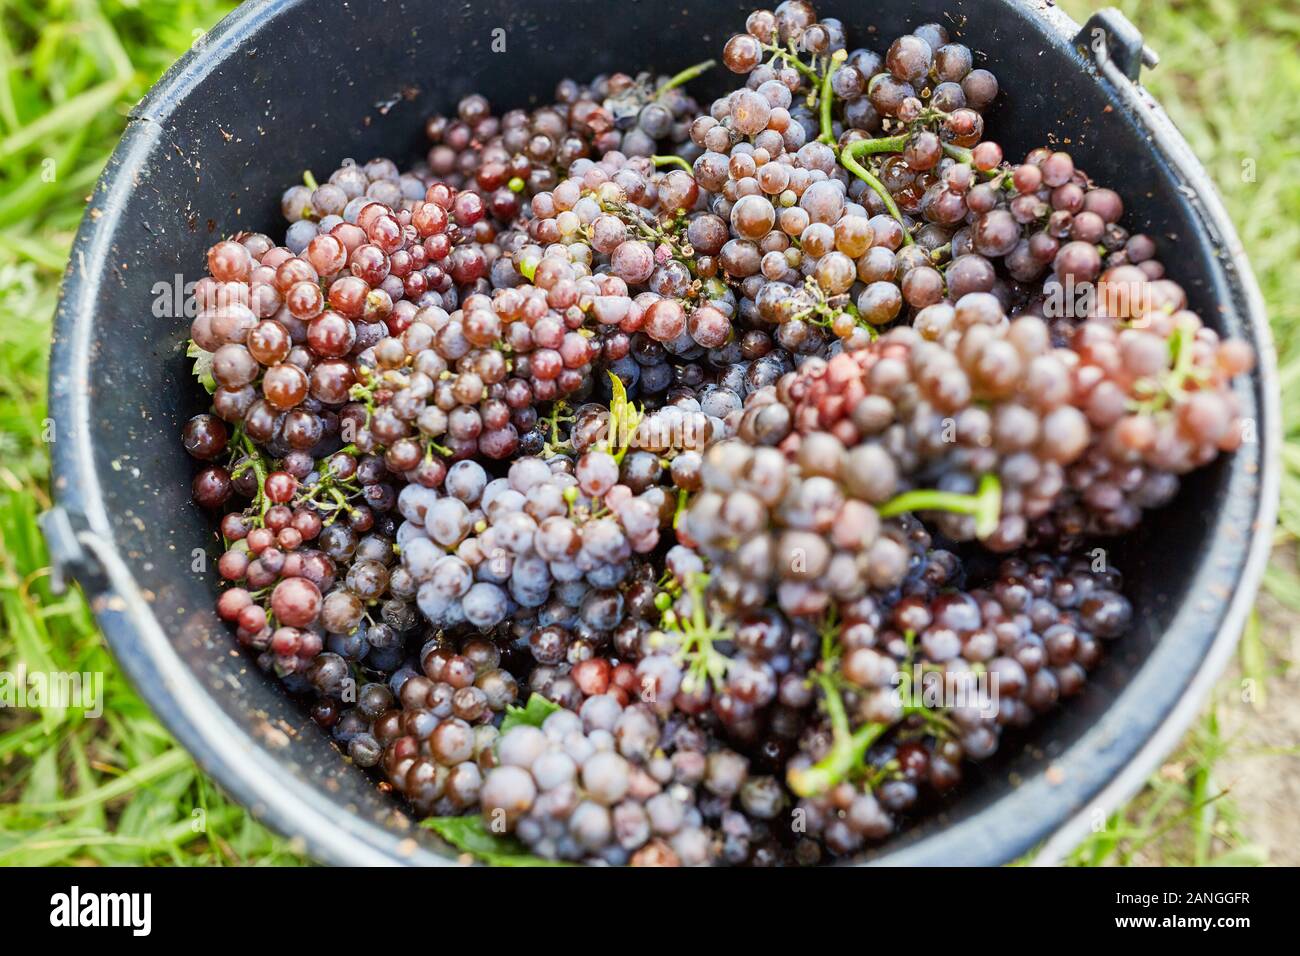 Eimer voller roter Weintrauben bei der Weinlese im Weinberg Stockfotografie  - Alamy